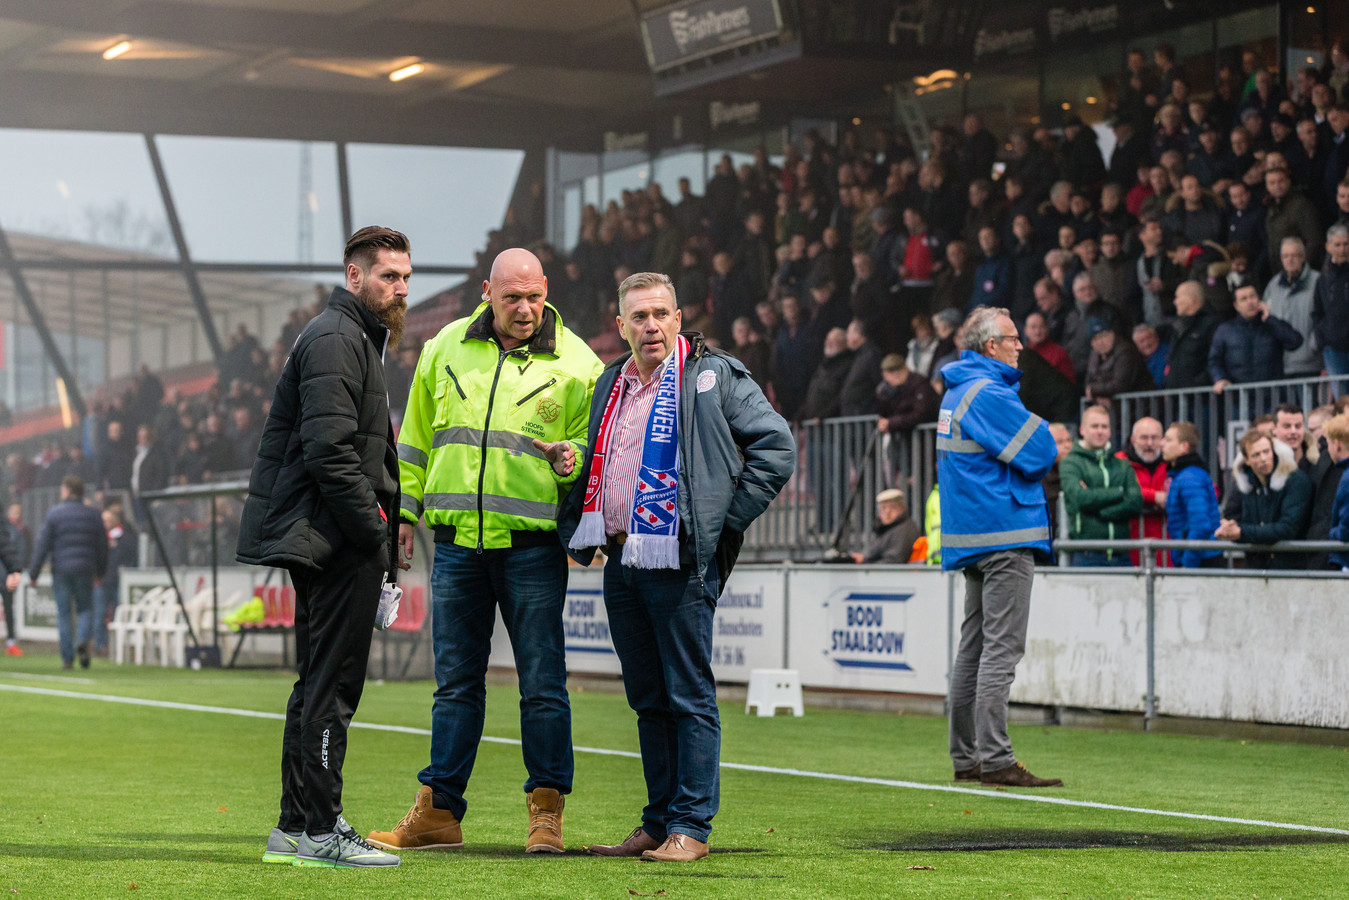 Voorzitter Frank van den Bos inspecteert het veld met Pascal Bosschaart en een steward, rechts achter de schroeiplek houdt een steward van Quick Boys de aanhang van die club in de gaten.